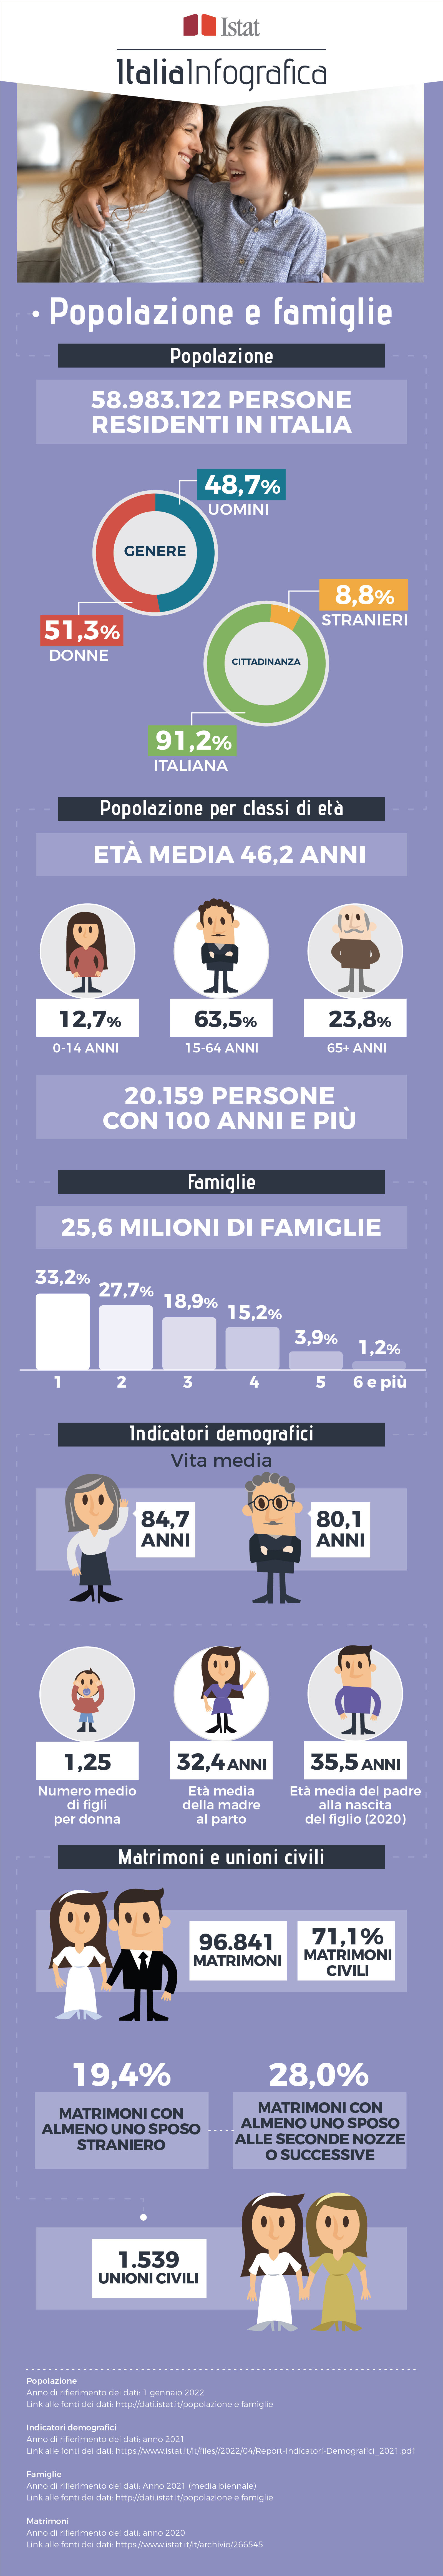 immagine di infografica con titolo ItaliaInfografica-VitaQuotidiana